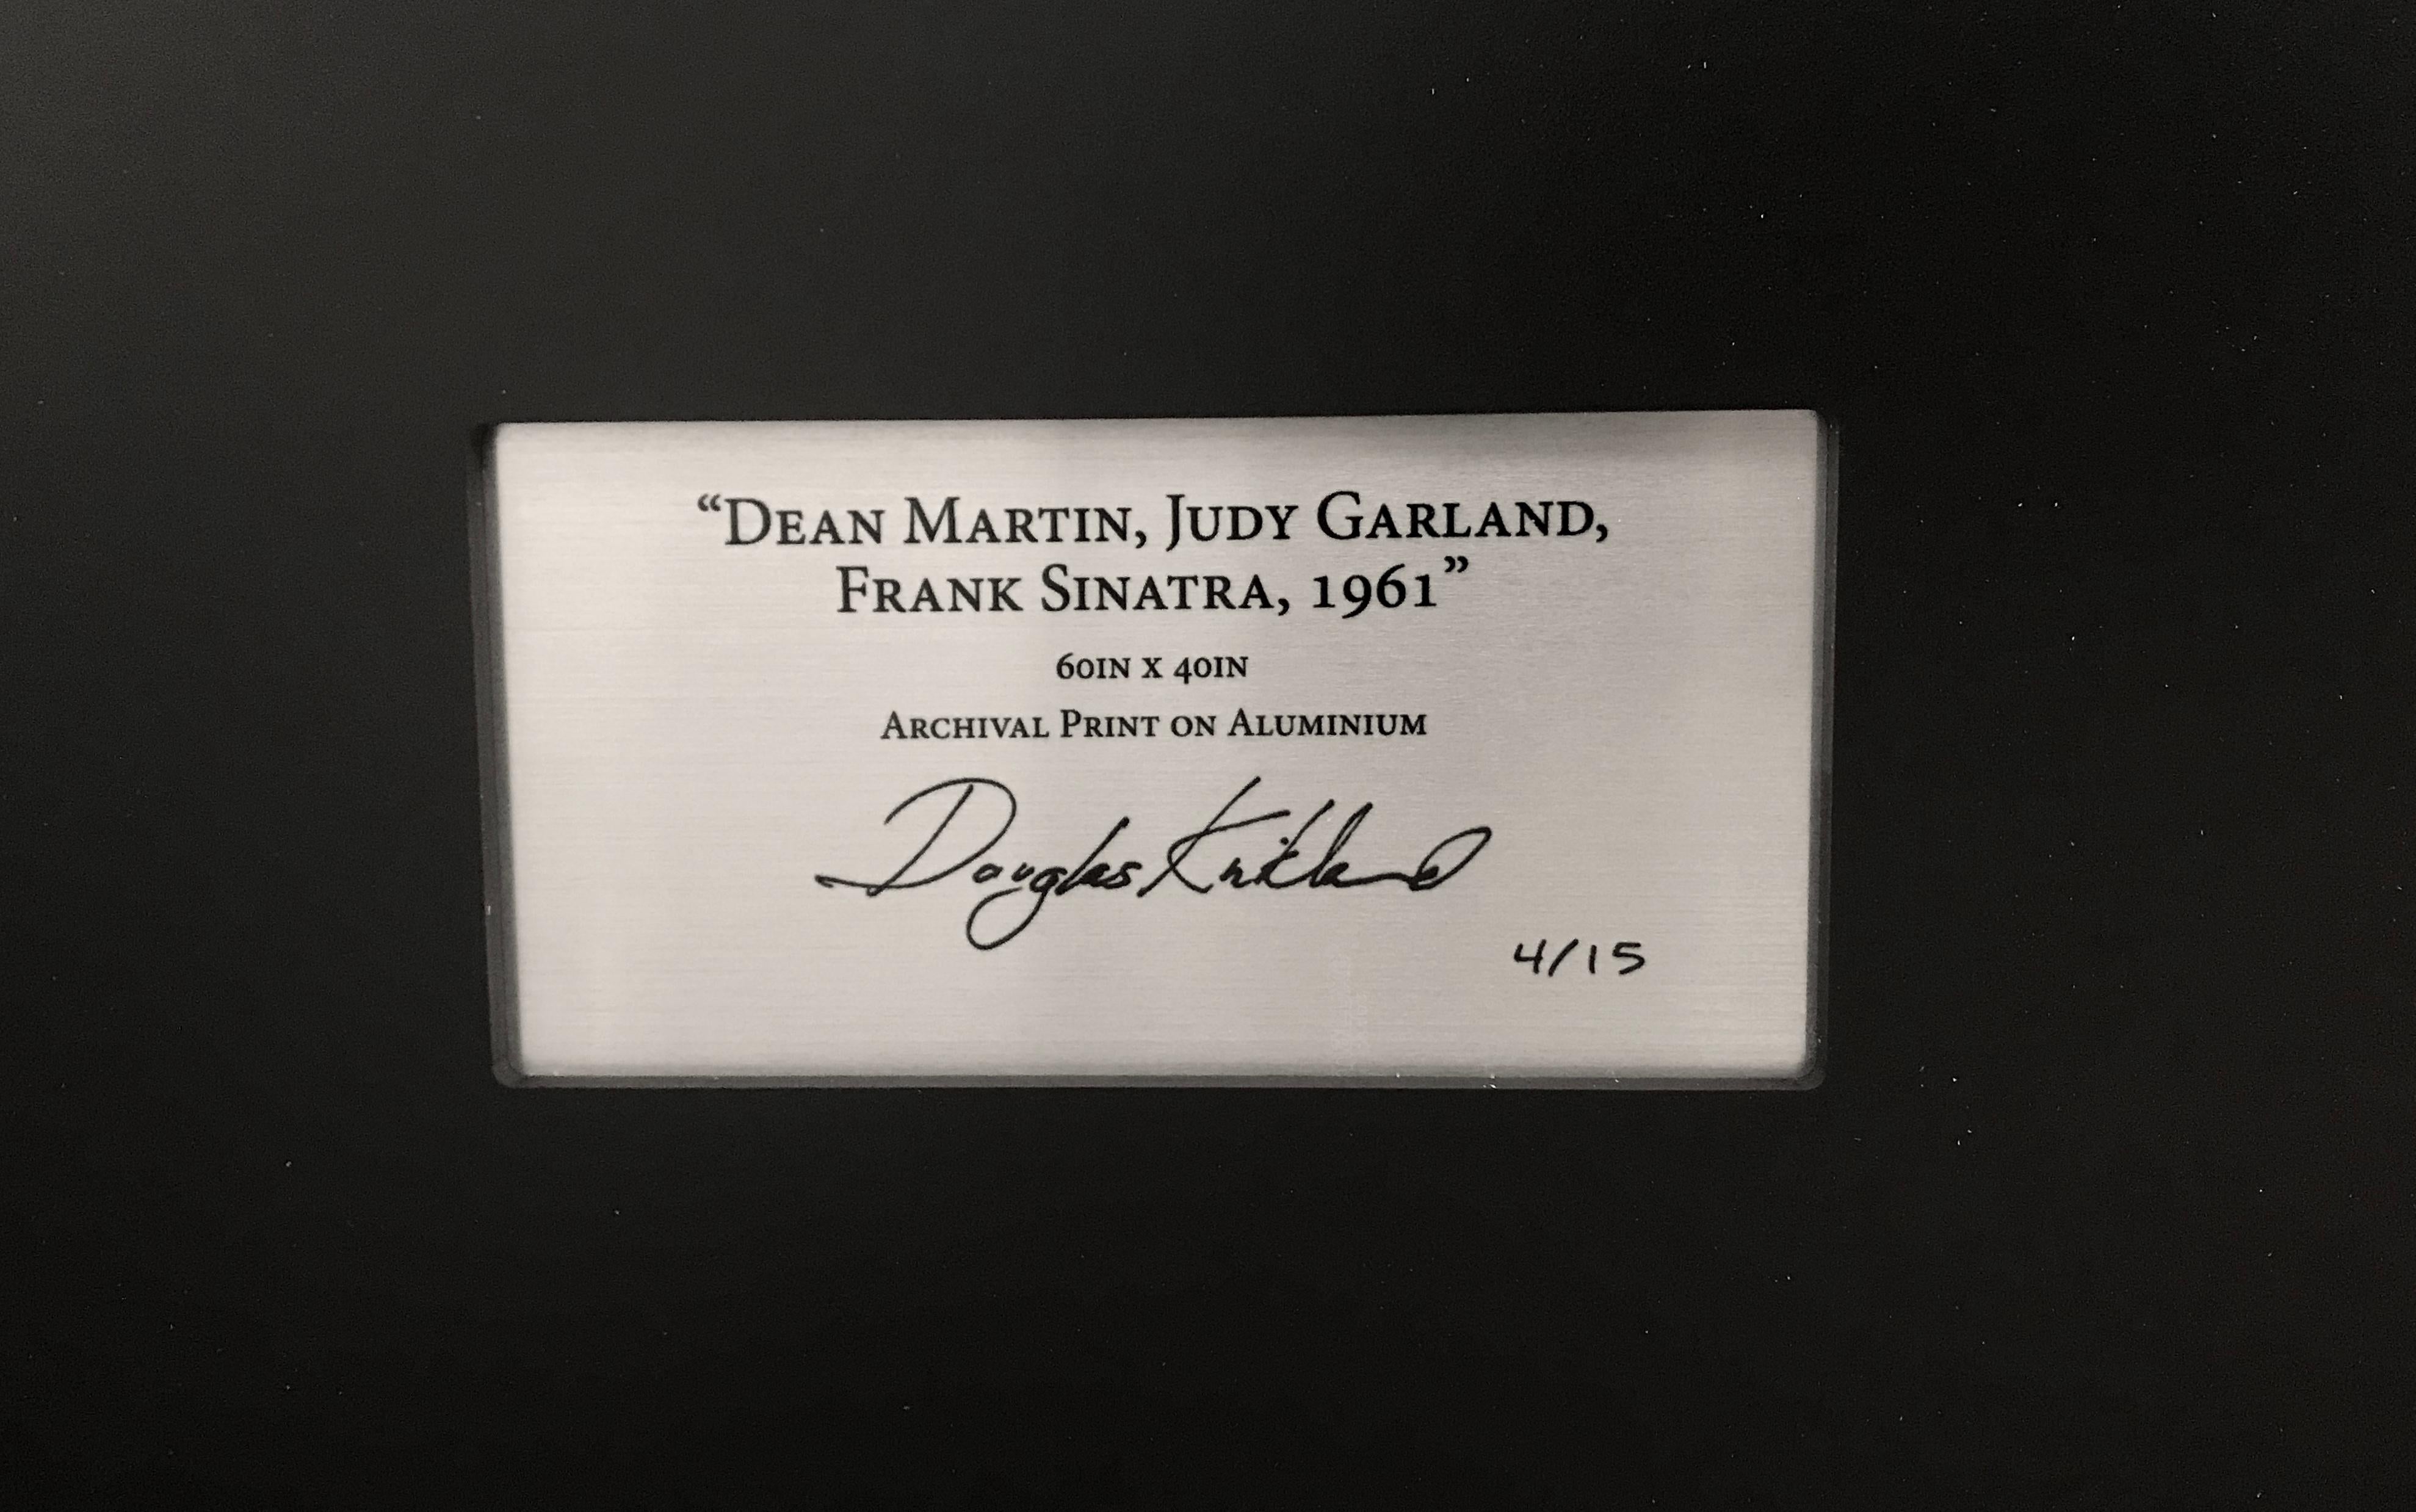 Dean Martin, Judy Garland, Frank Sinatra  - Photograph by Douglas Kirkland